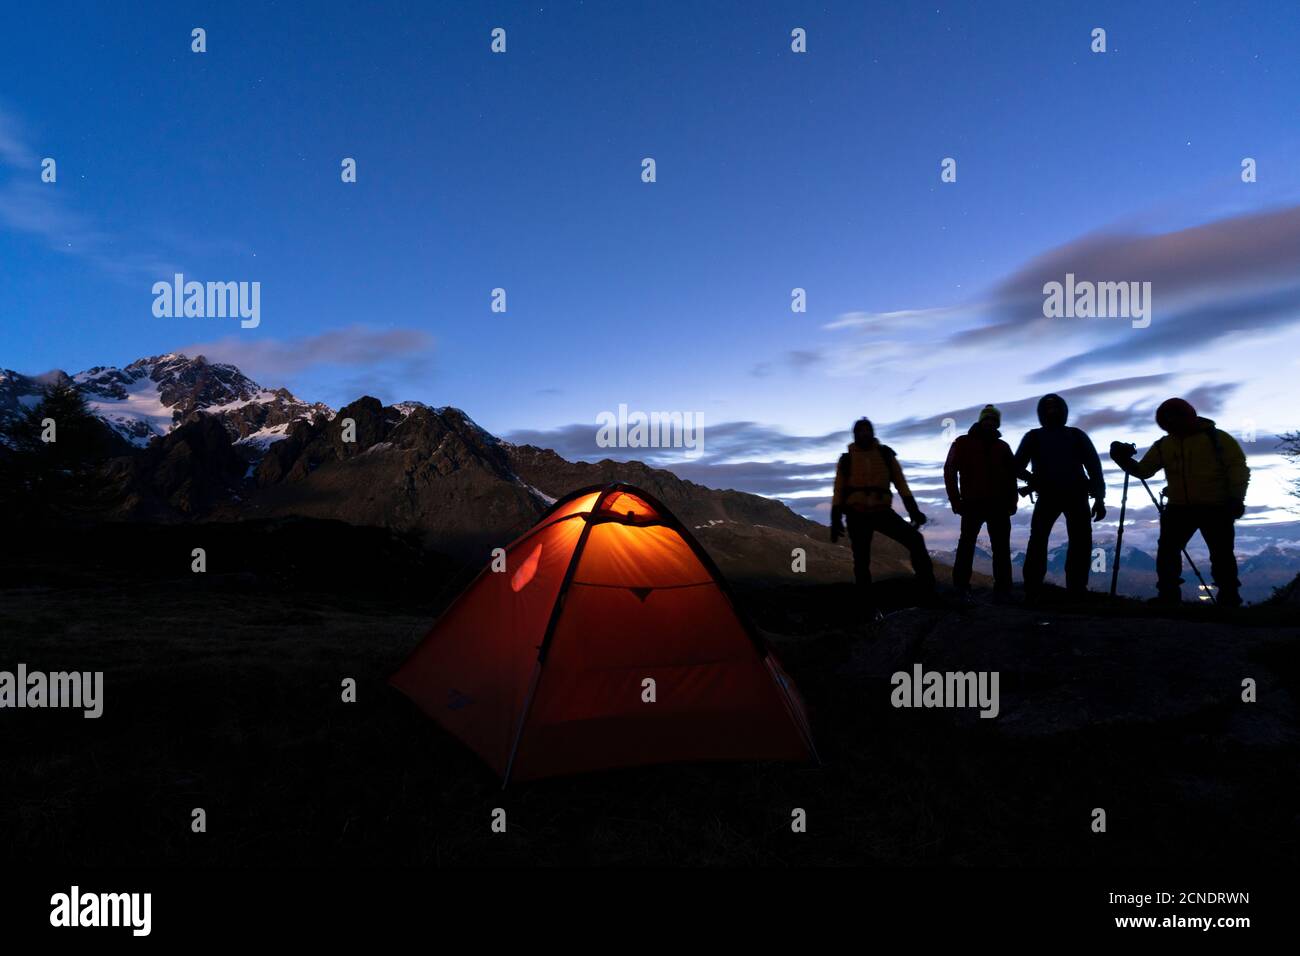 Excursionistas acampando con carpa fotografiando Monte Disgrazia por la noche, Valmalenco, provincia de Sondrio, Valtellina, Lombardía, Italia, Europa Foto de stock